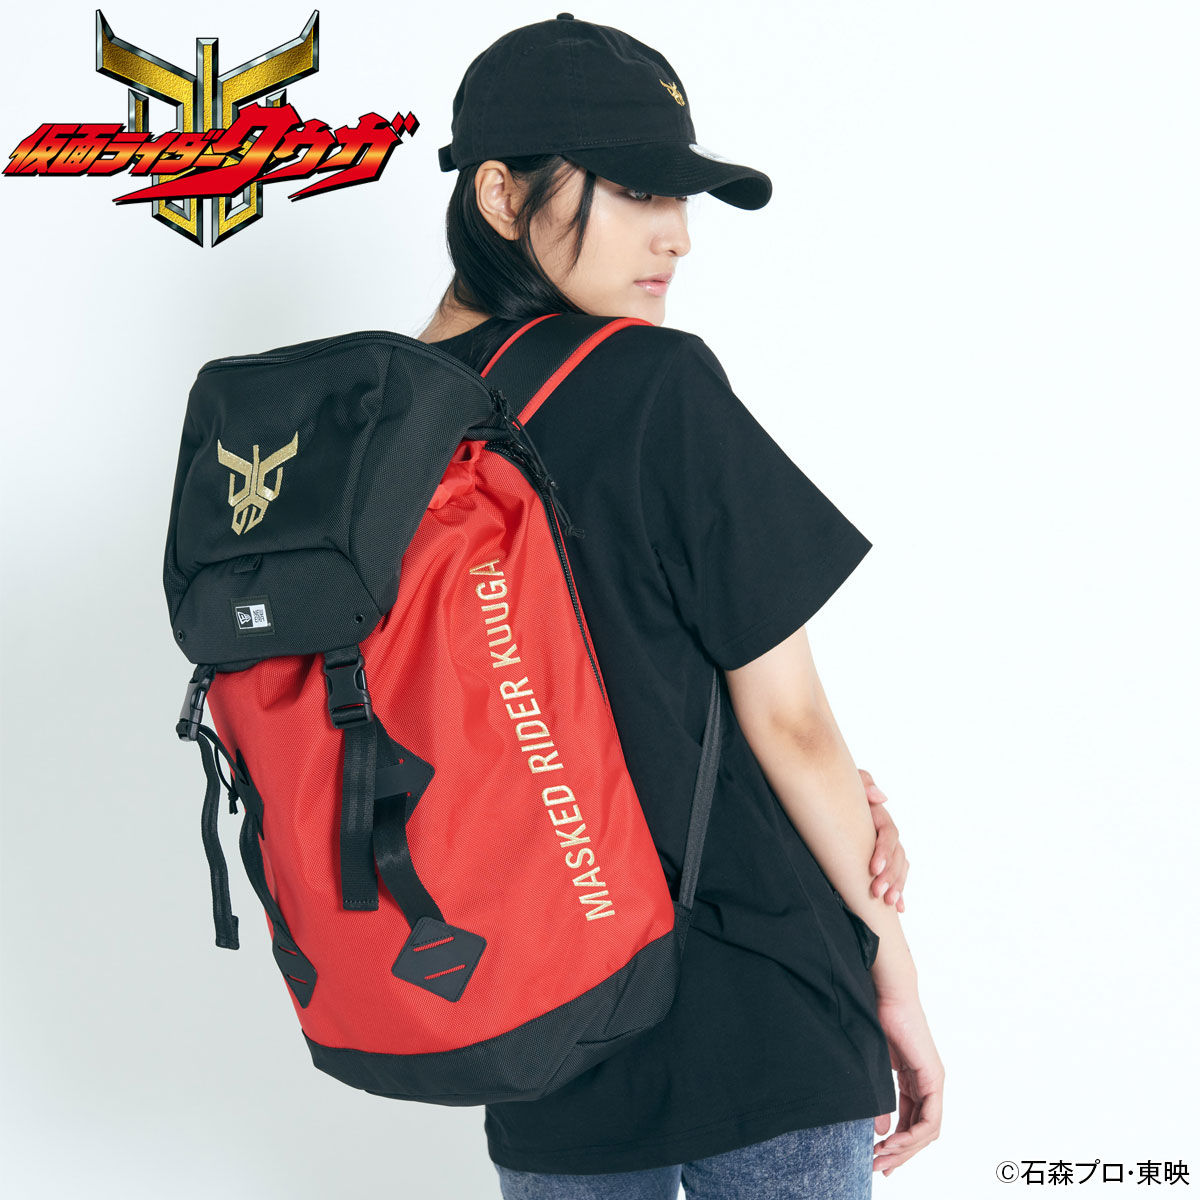 Backpack—Kamen Rider Kuuga/New Era Collaboration